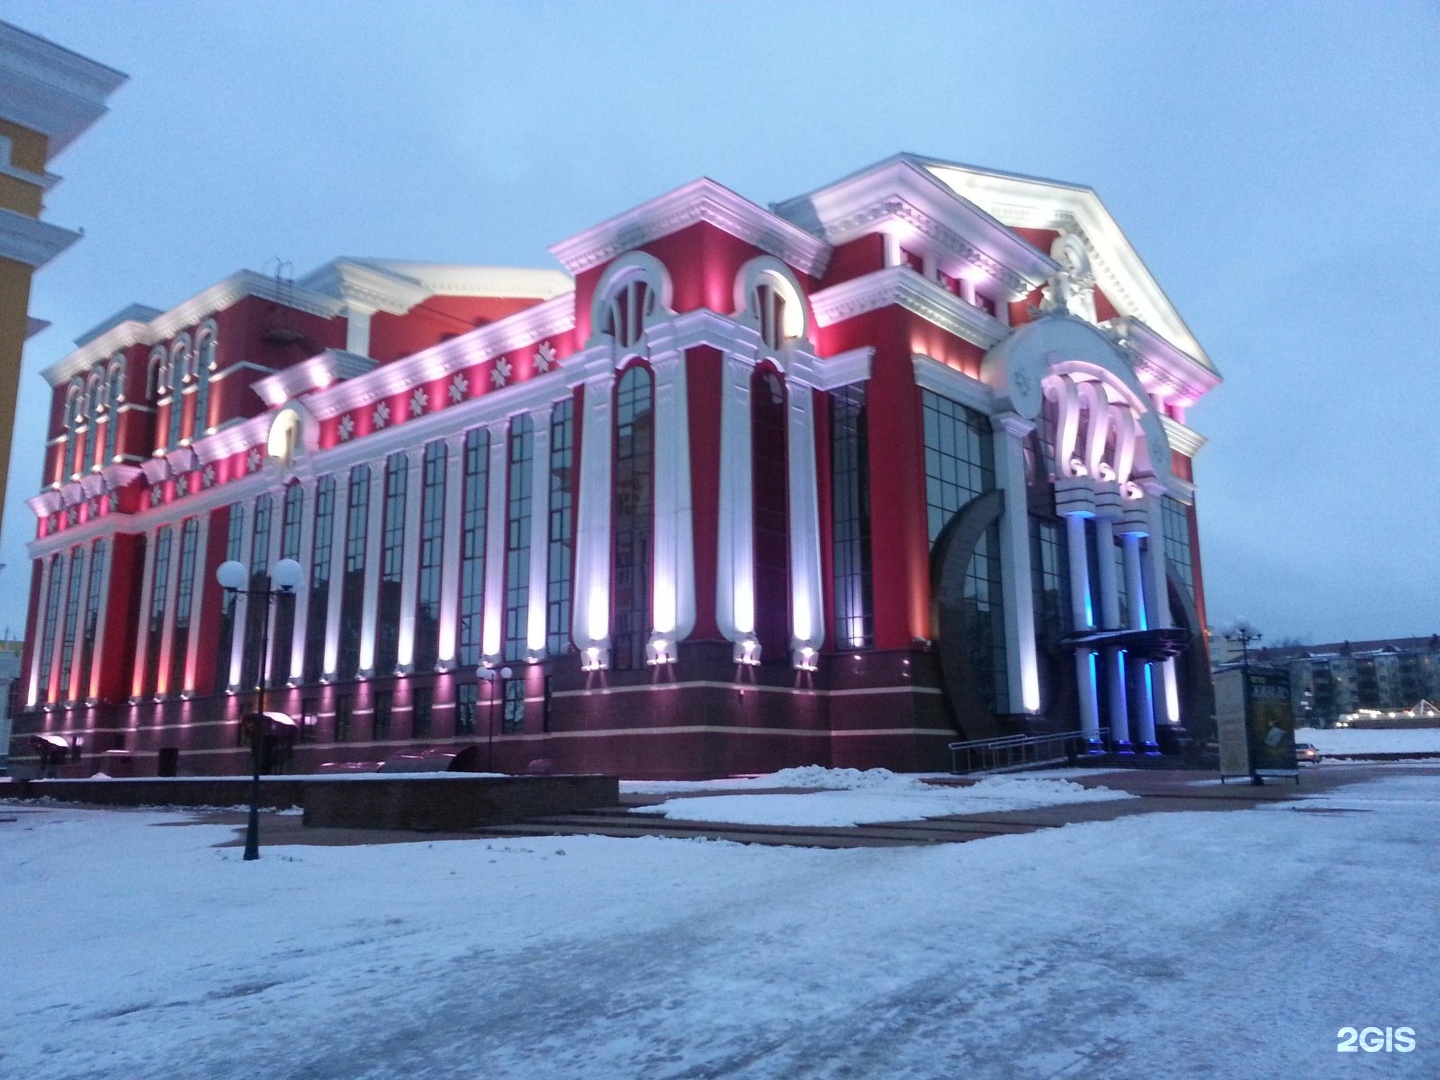 мордовский драматический театр